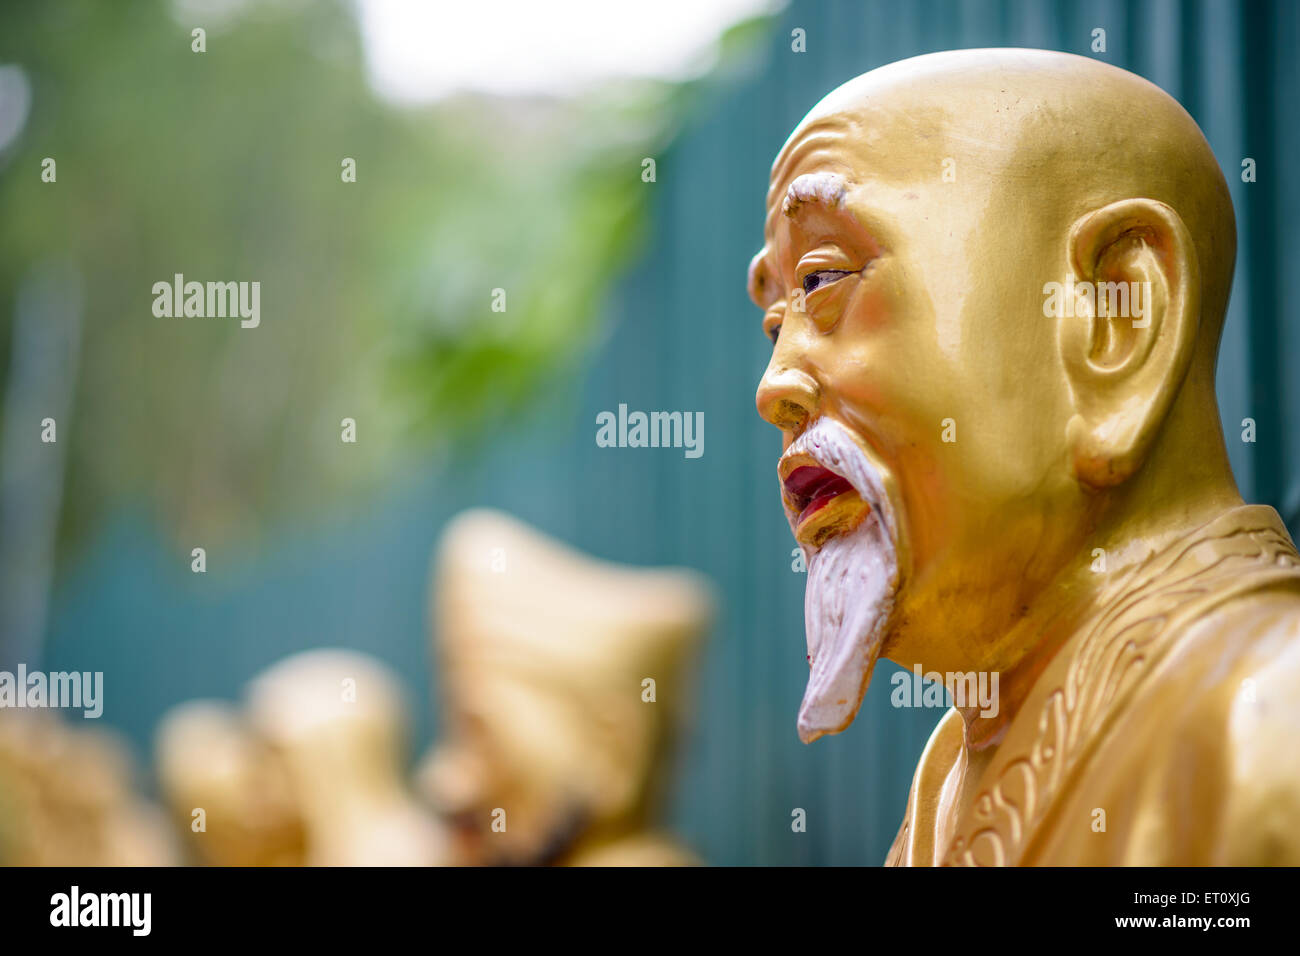 Statues at Ten Thousand Buddhas Monastery in Sha Tin, Hong Kong, China. Stock Photo